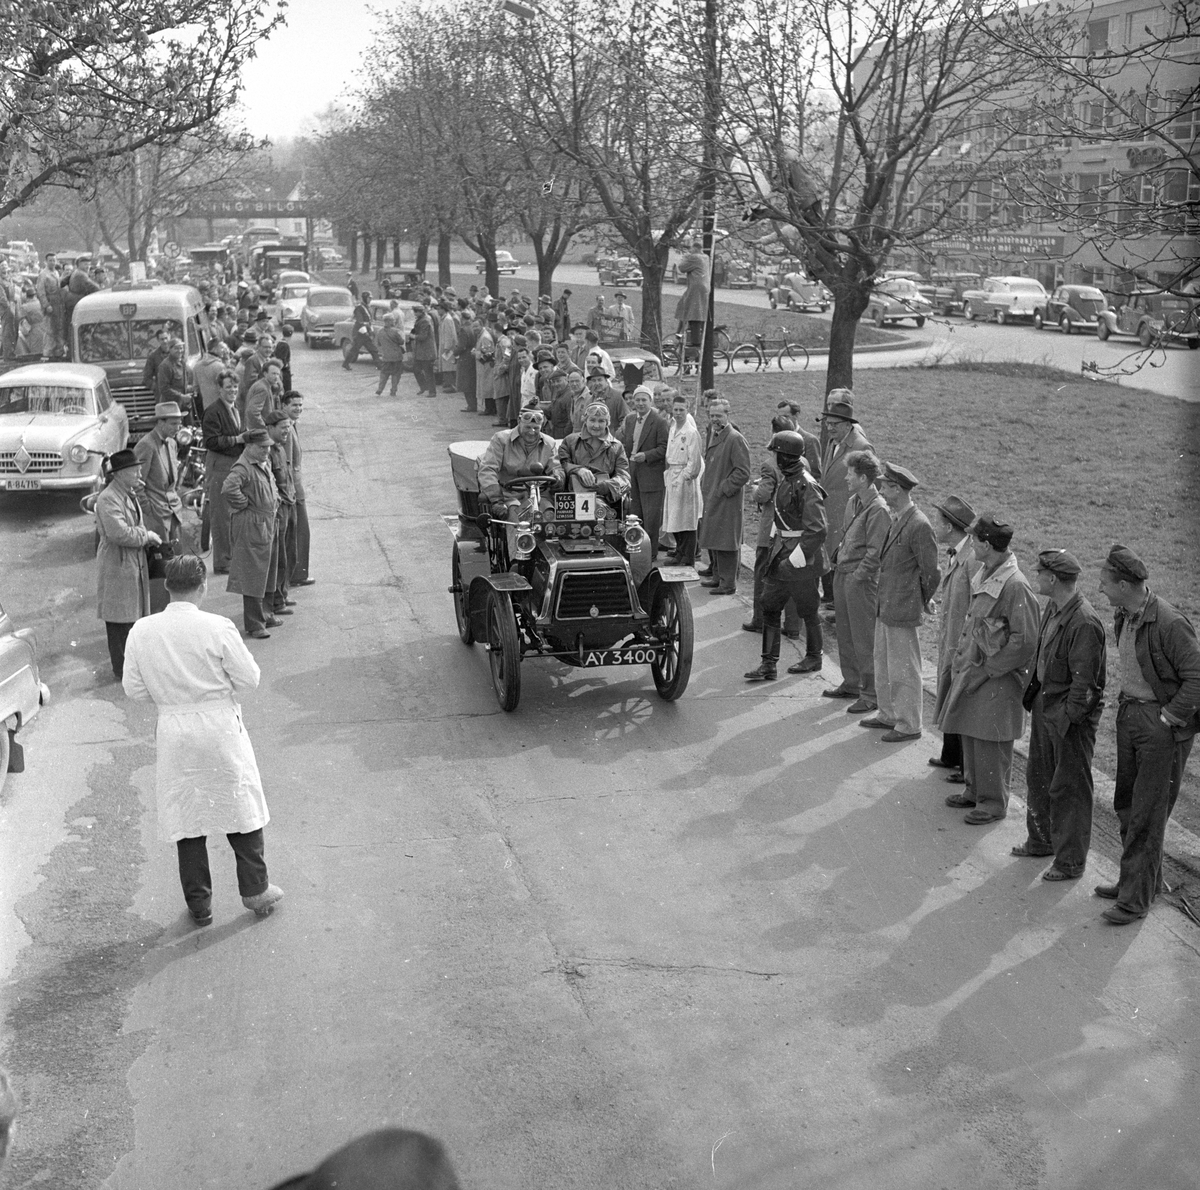 Veteranvogn Rally Oslofjord 1951. Sjåfør og passasjer kjører veteranbil. Publikum og politi langs traseen. Fotografert ant. 1951.